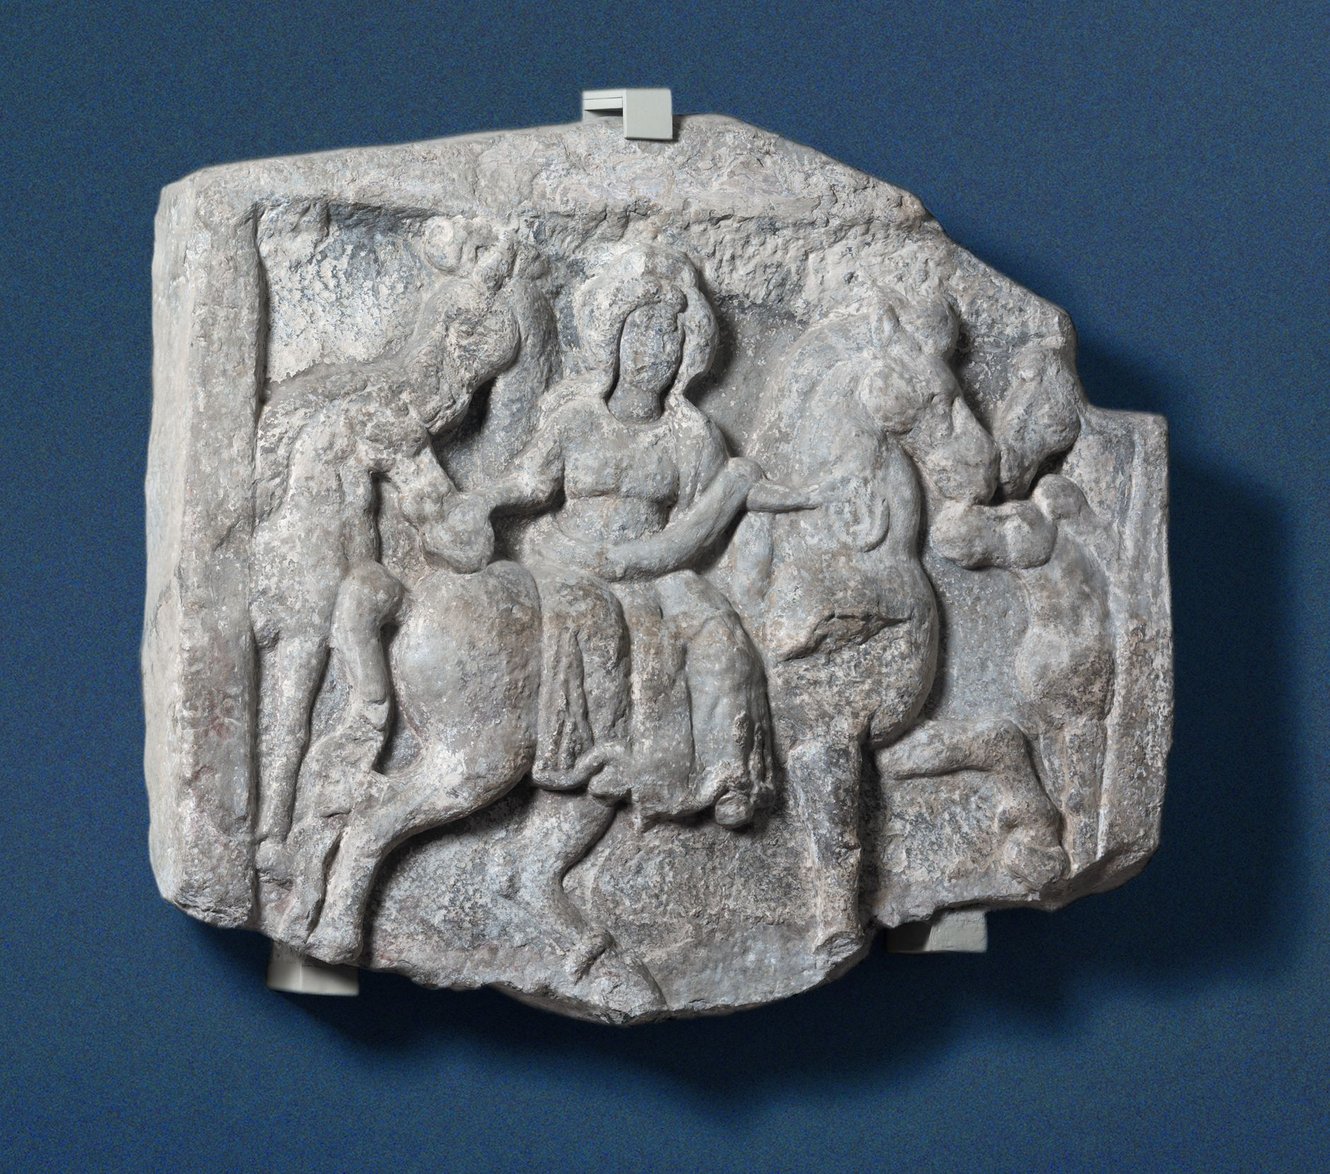 Weihestein an die Pferdegöttin Epona, 1./2. Jhd. n. Chr. ©vorarlberg museum, Robert Fessler